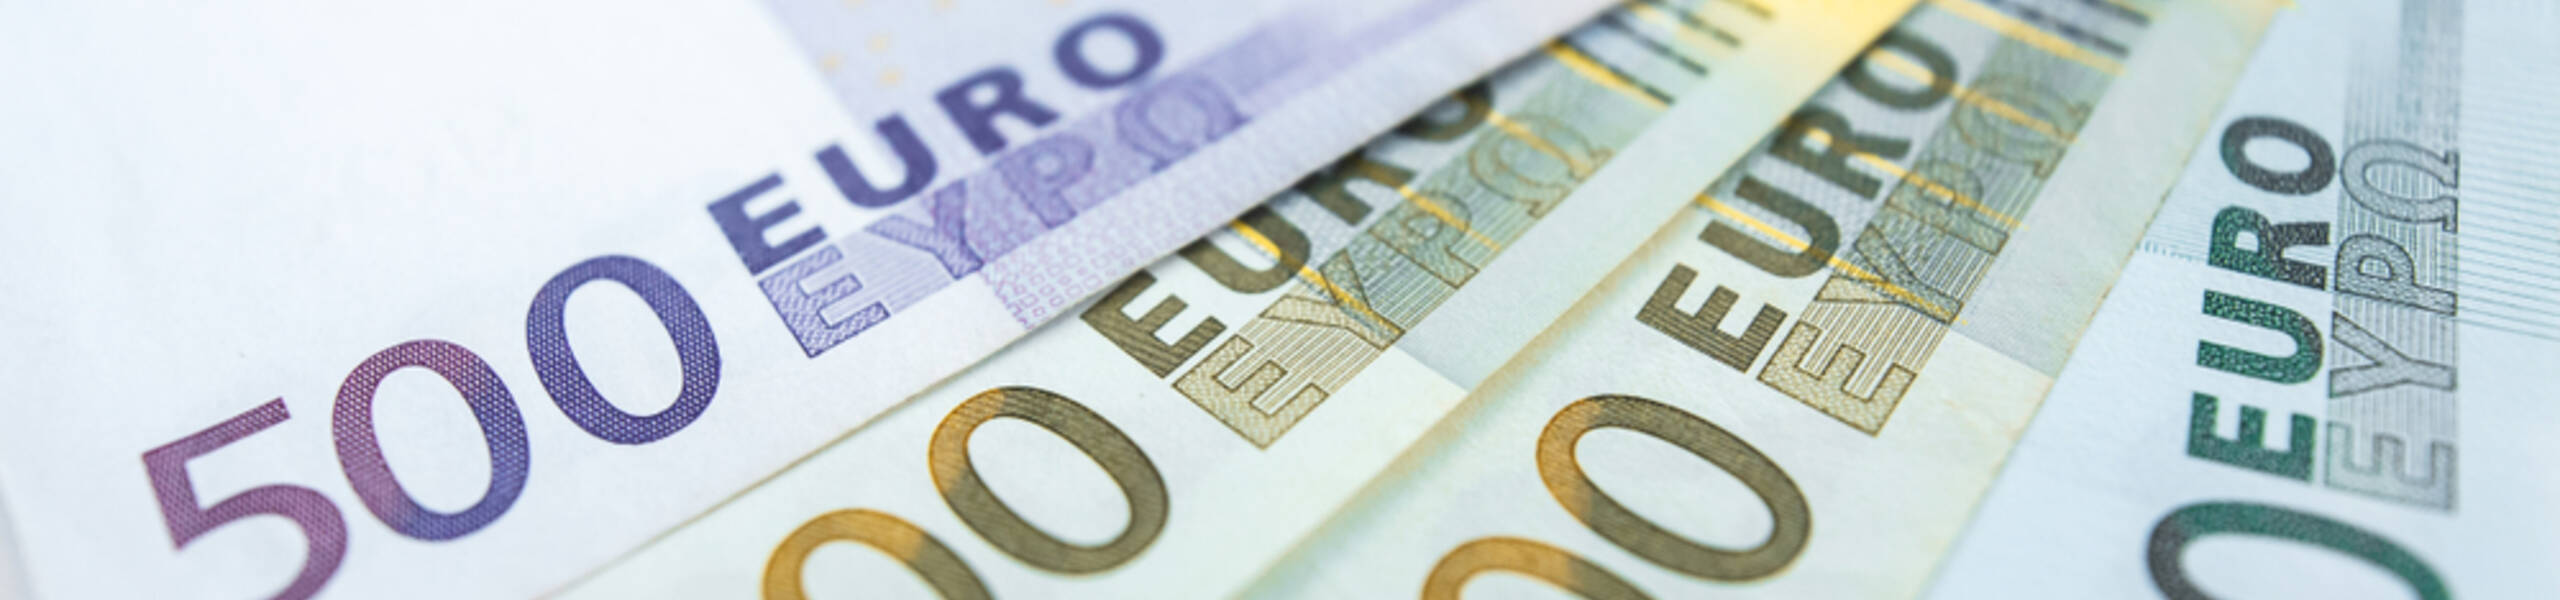 Touros do EUR / USD buscam apoio acima de 1,1900